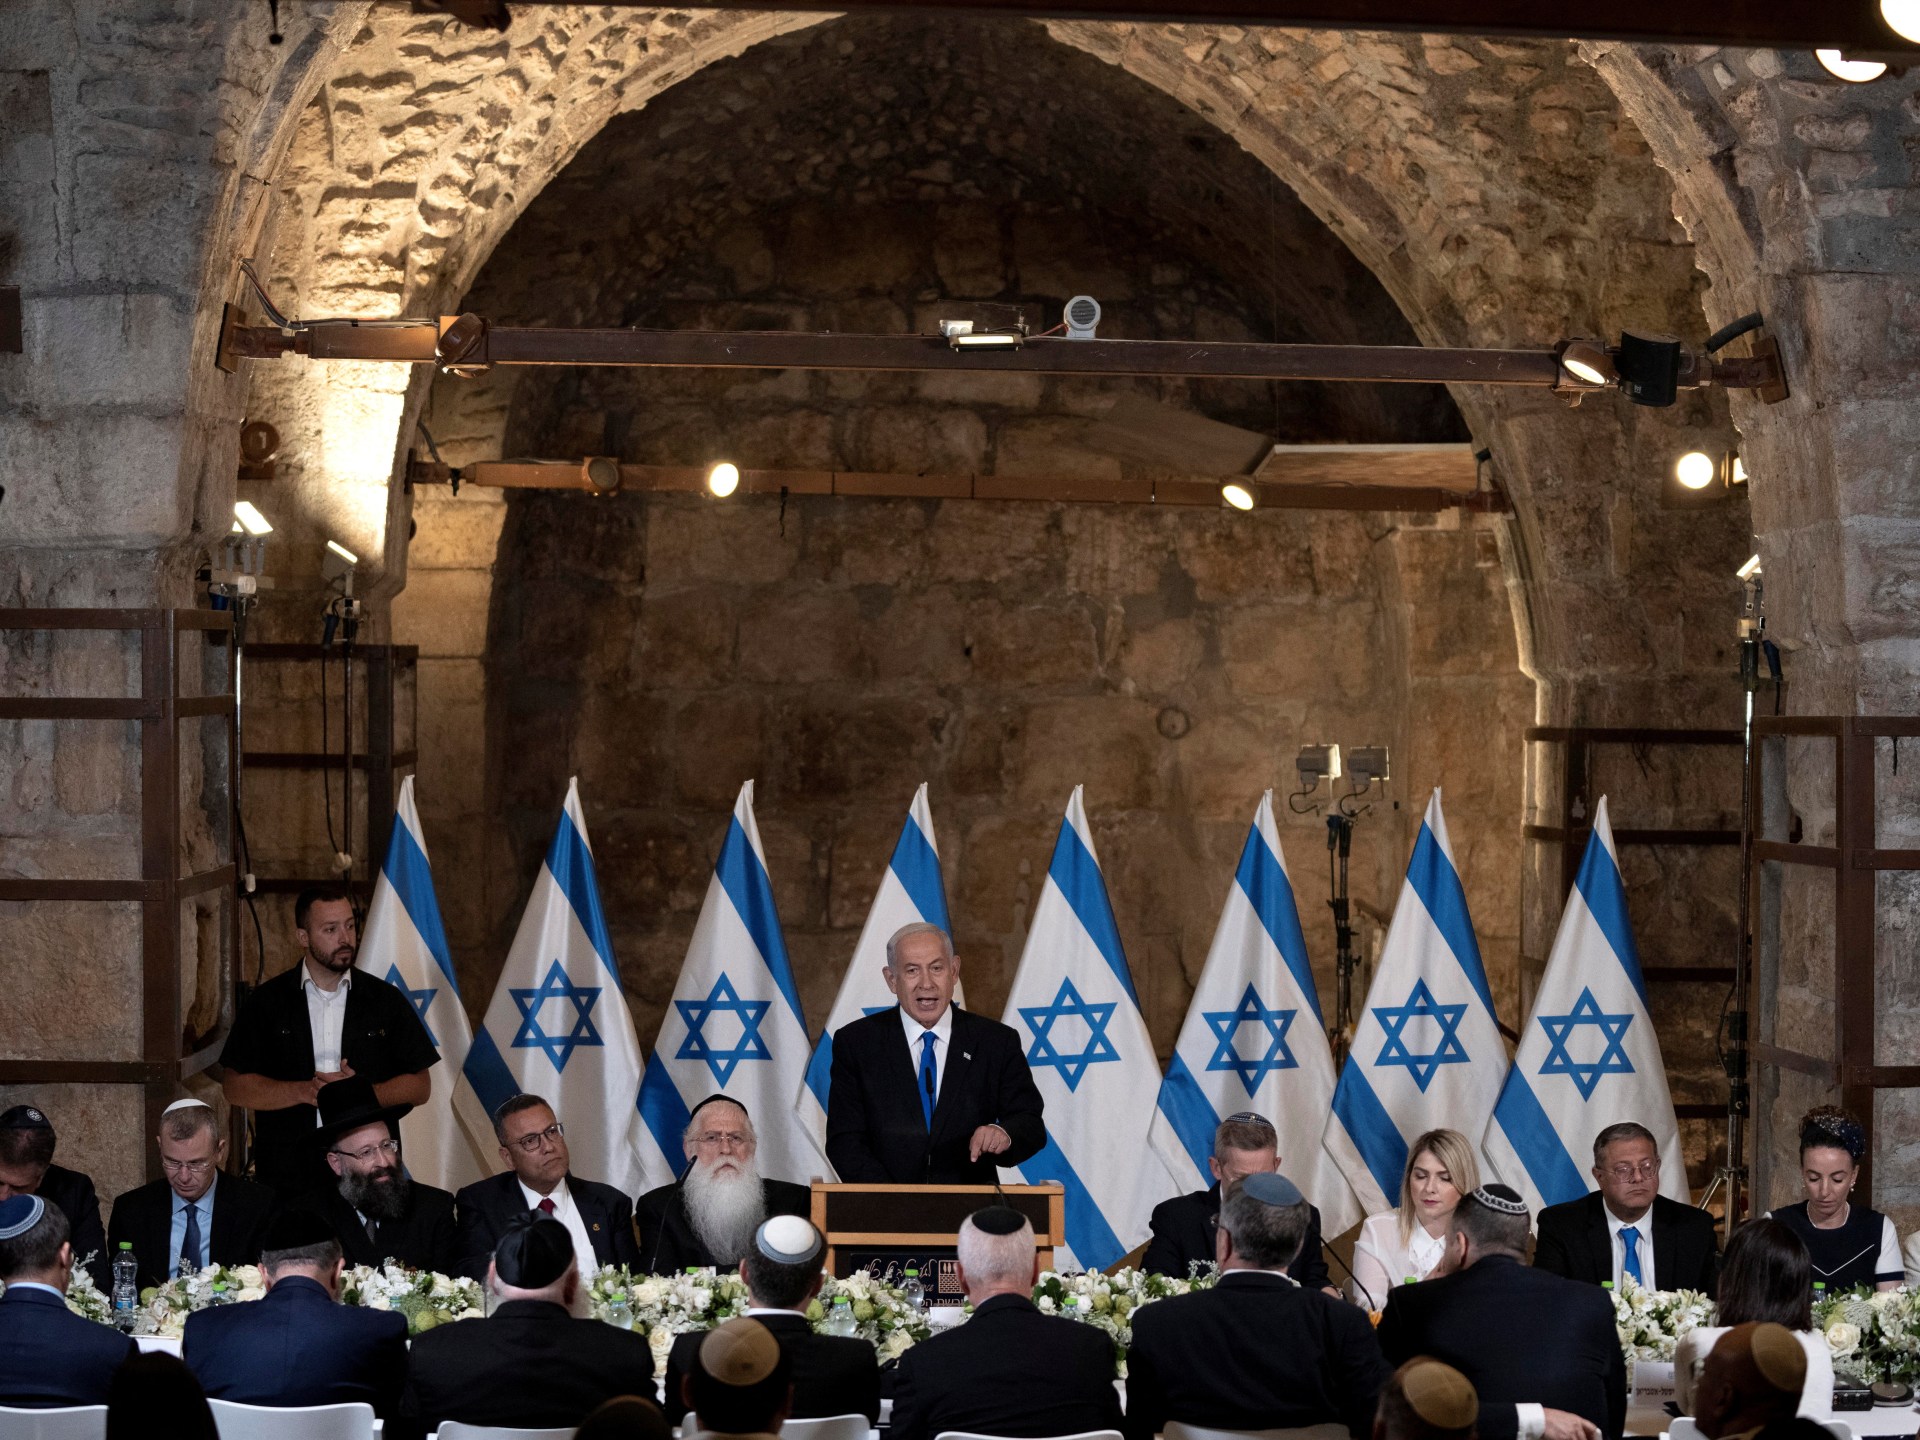 “الكابينت” مجلس الوزراء الإسرائيلي المصغر للشؤون السياسية والأمنية | الموسوعة – البوكس نيوز